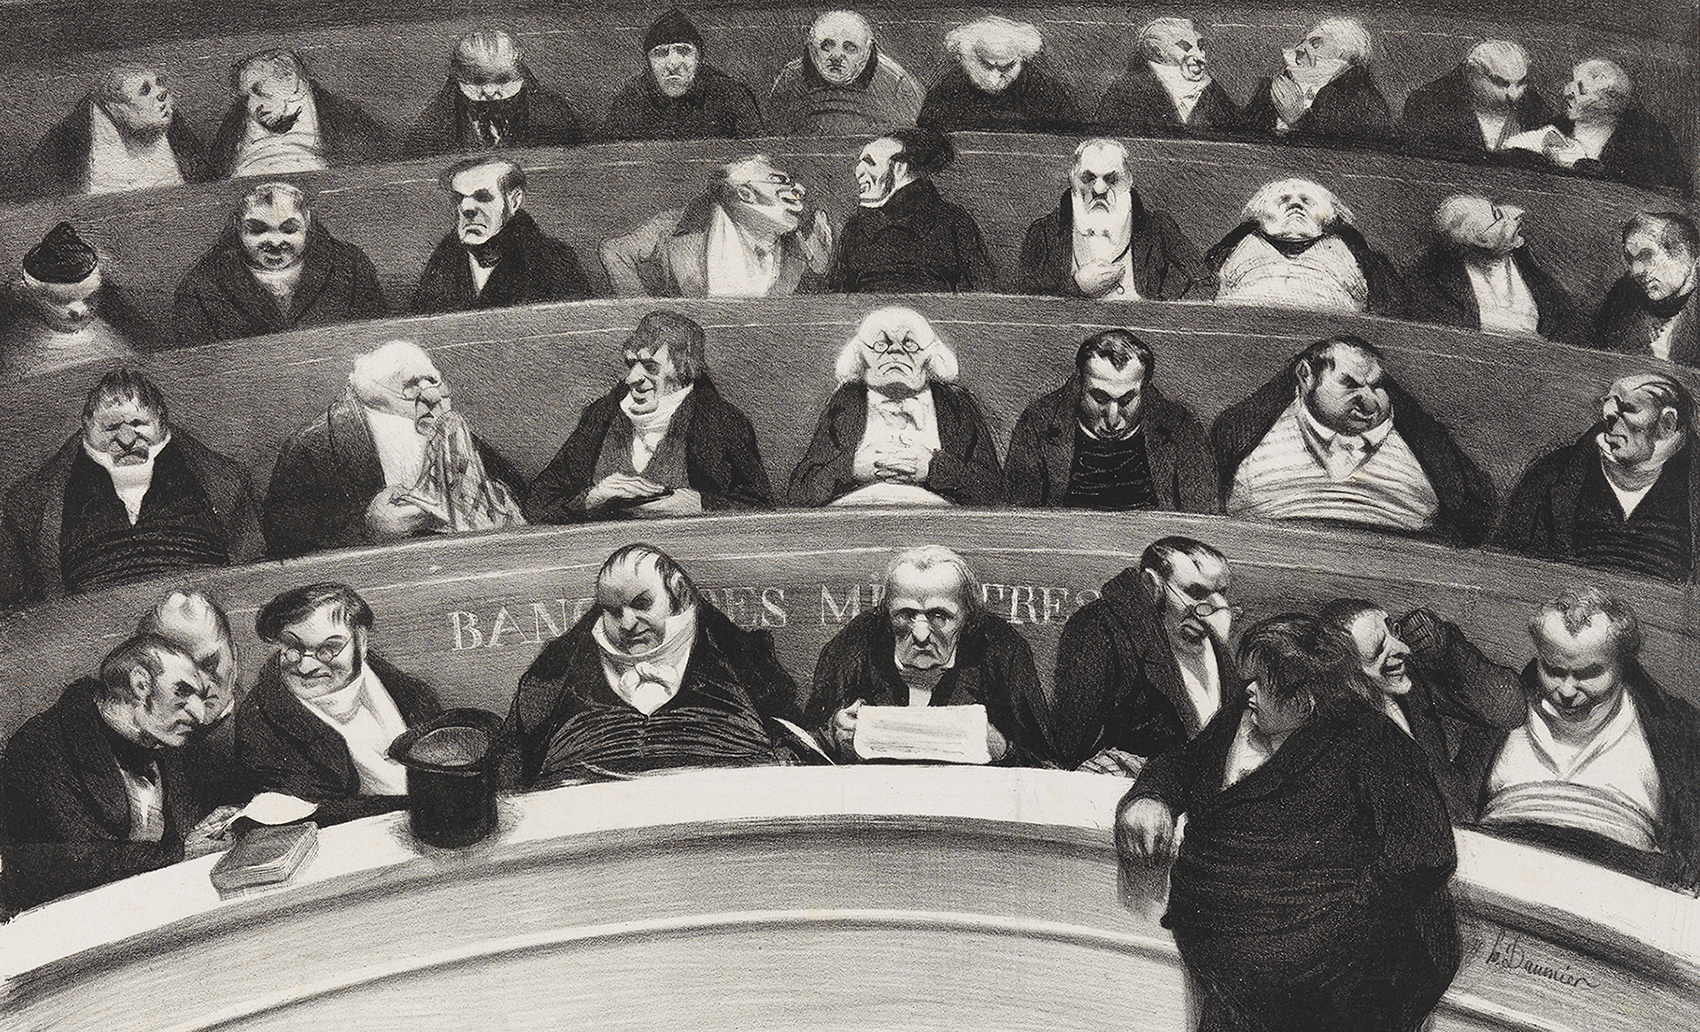 Lithografie von Honoré Daumier: Auf abgestuften Sitzrängen sitzen behäbig gut dreißig Männer in Anzügen. Die Körperformen und die Gesichtszüge sind übertrieben unschön dargestellt.